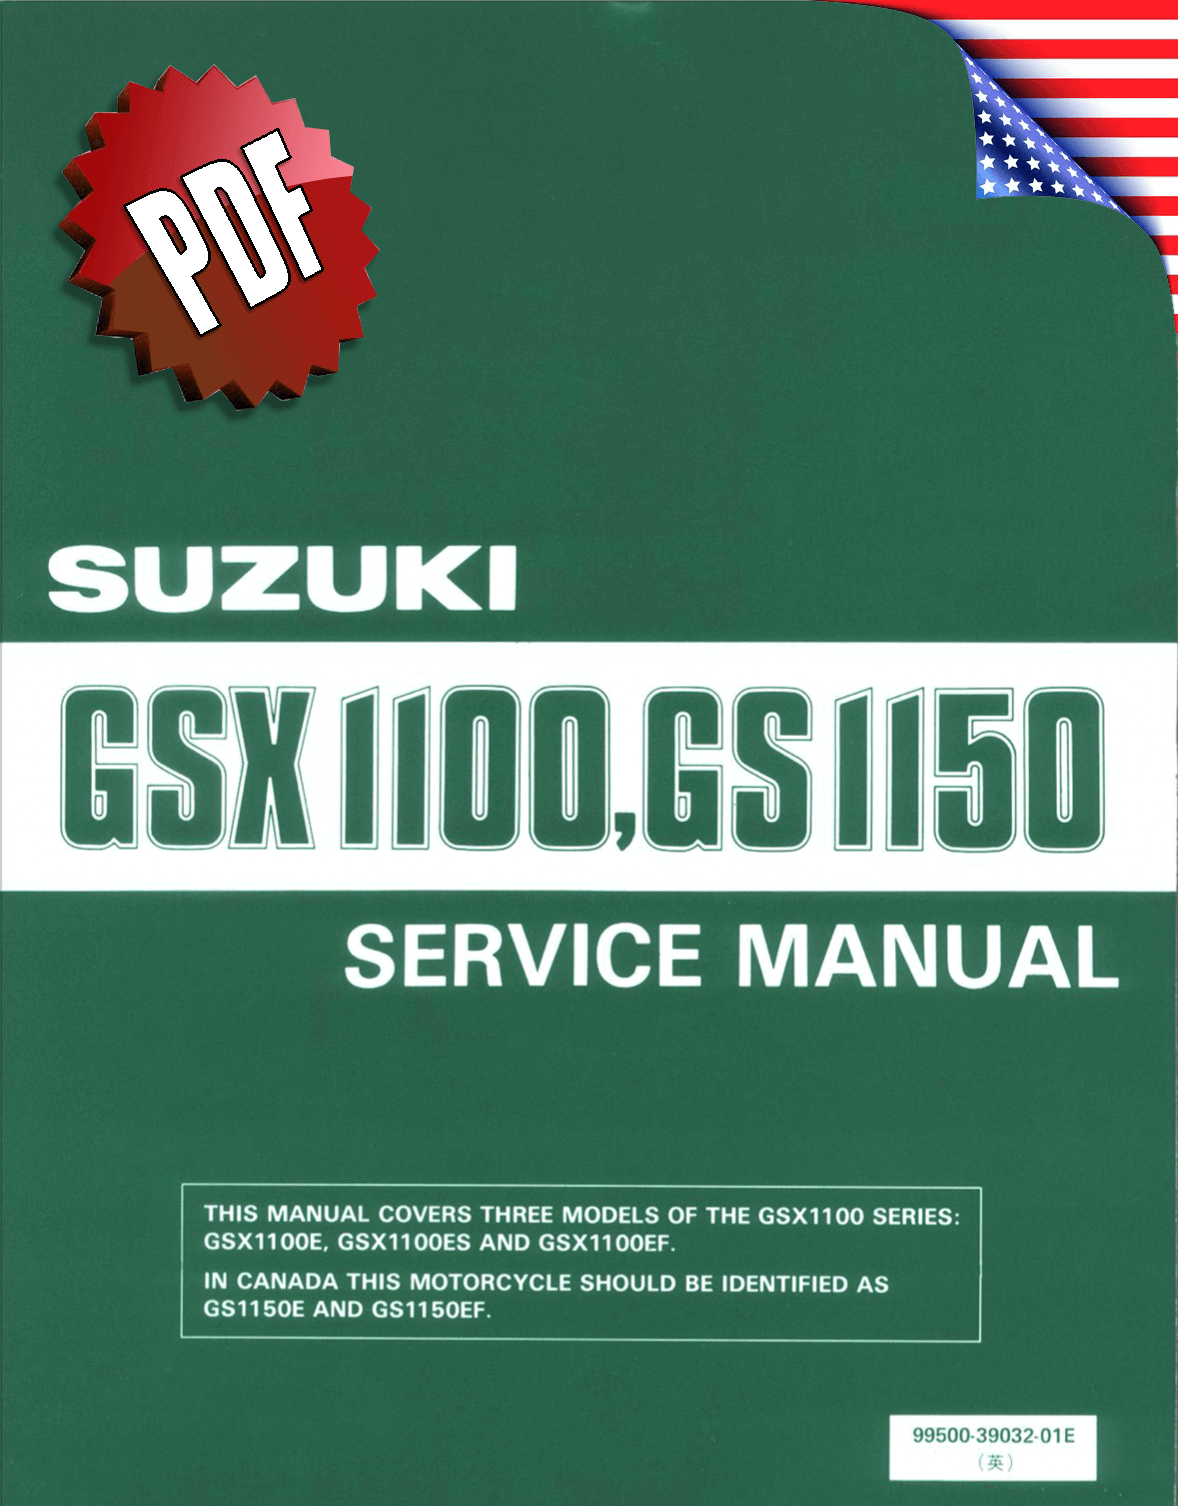 Suzuki GS1150, GSX 1100 E-ES-EF